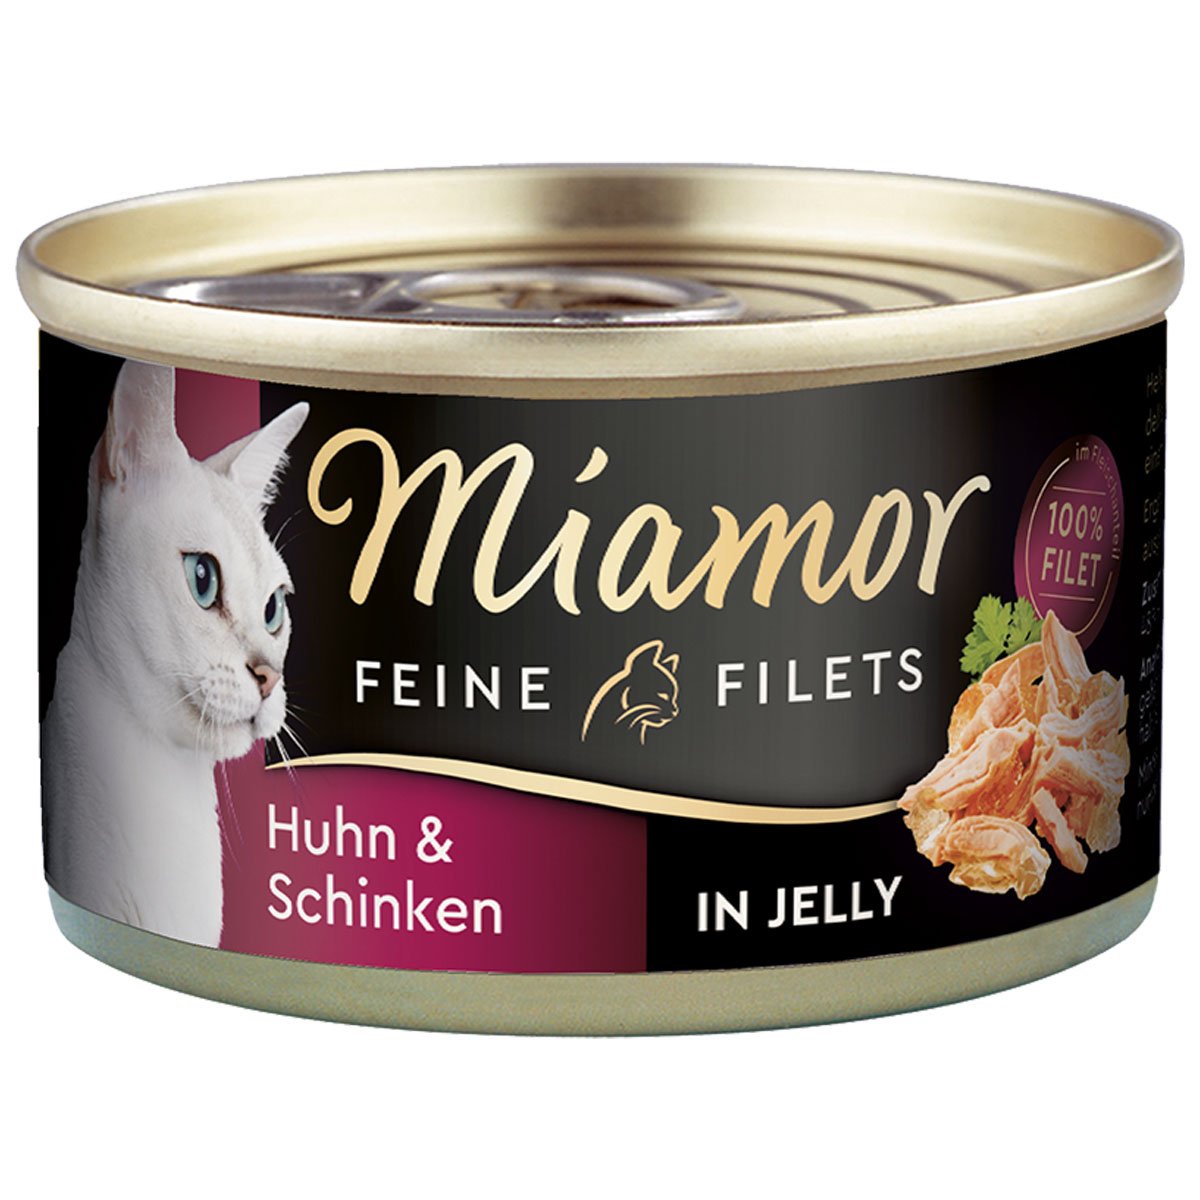 Miamor Feine Filets in Jelly Huhn und Schinken 100g Dose 48x100g